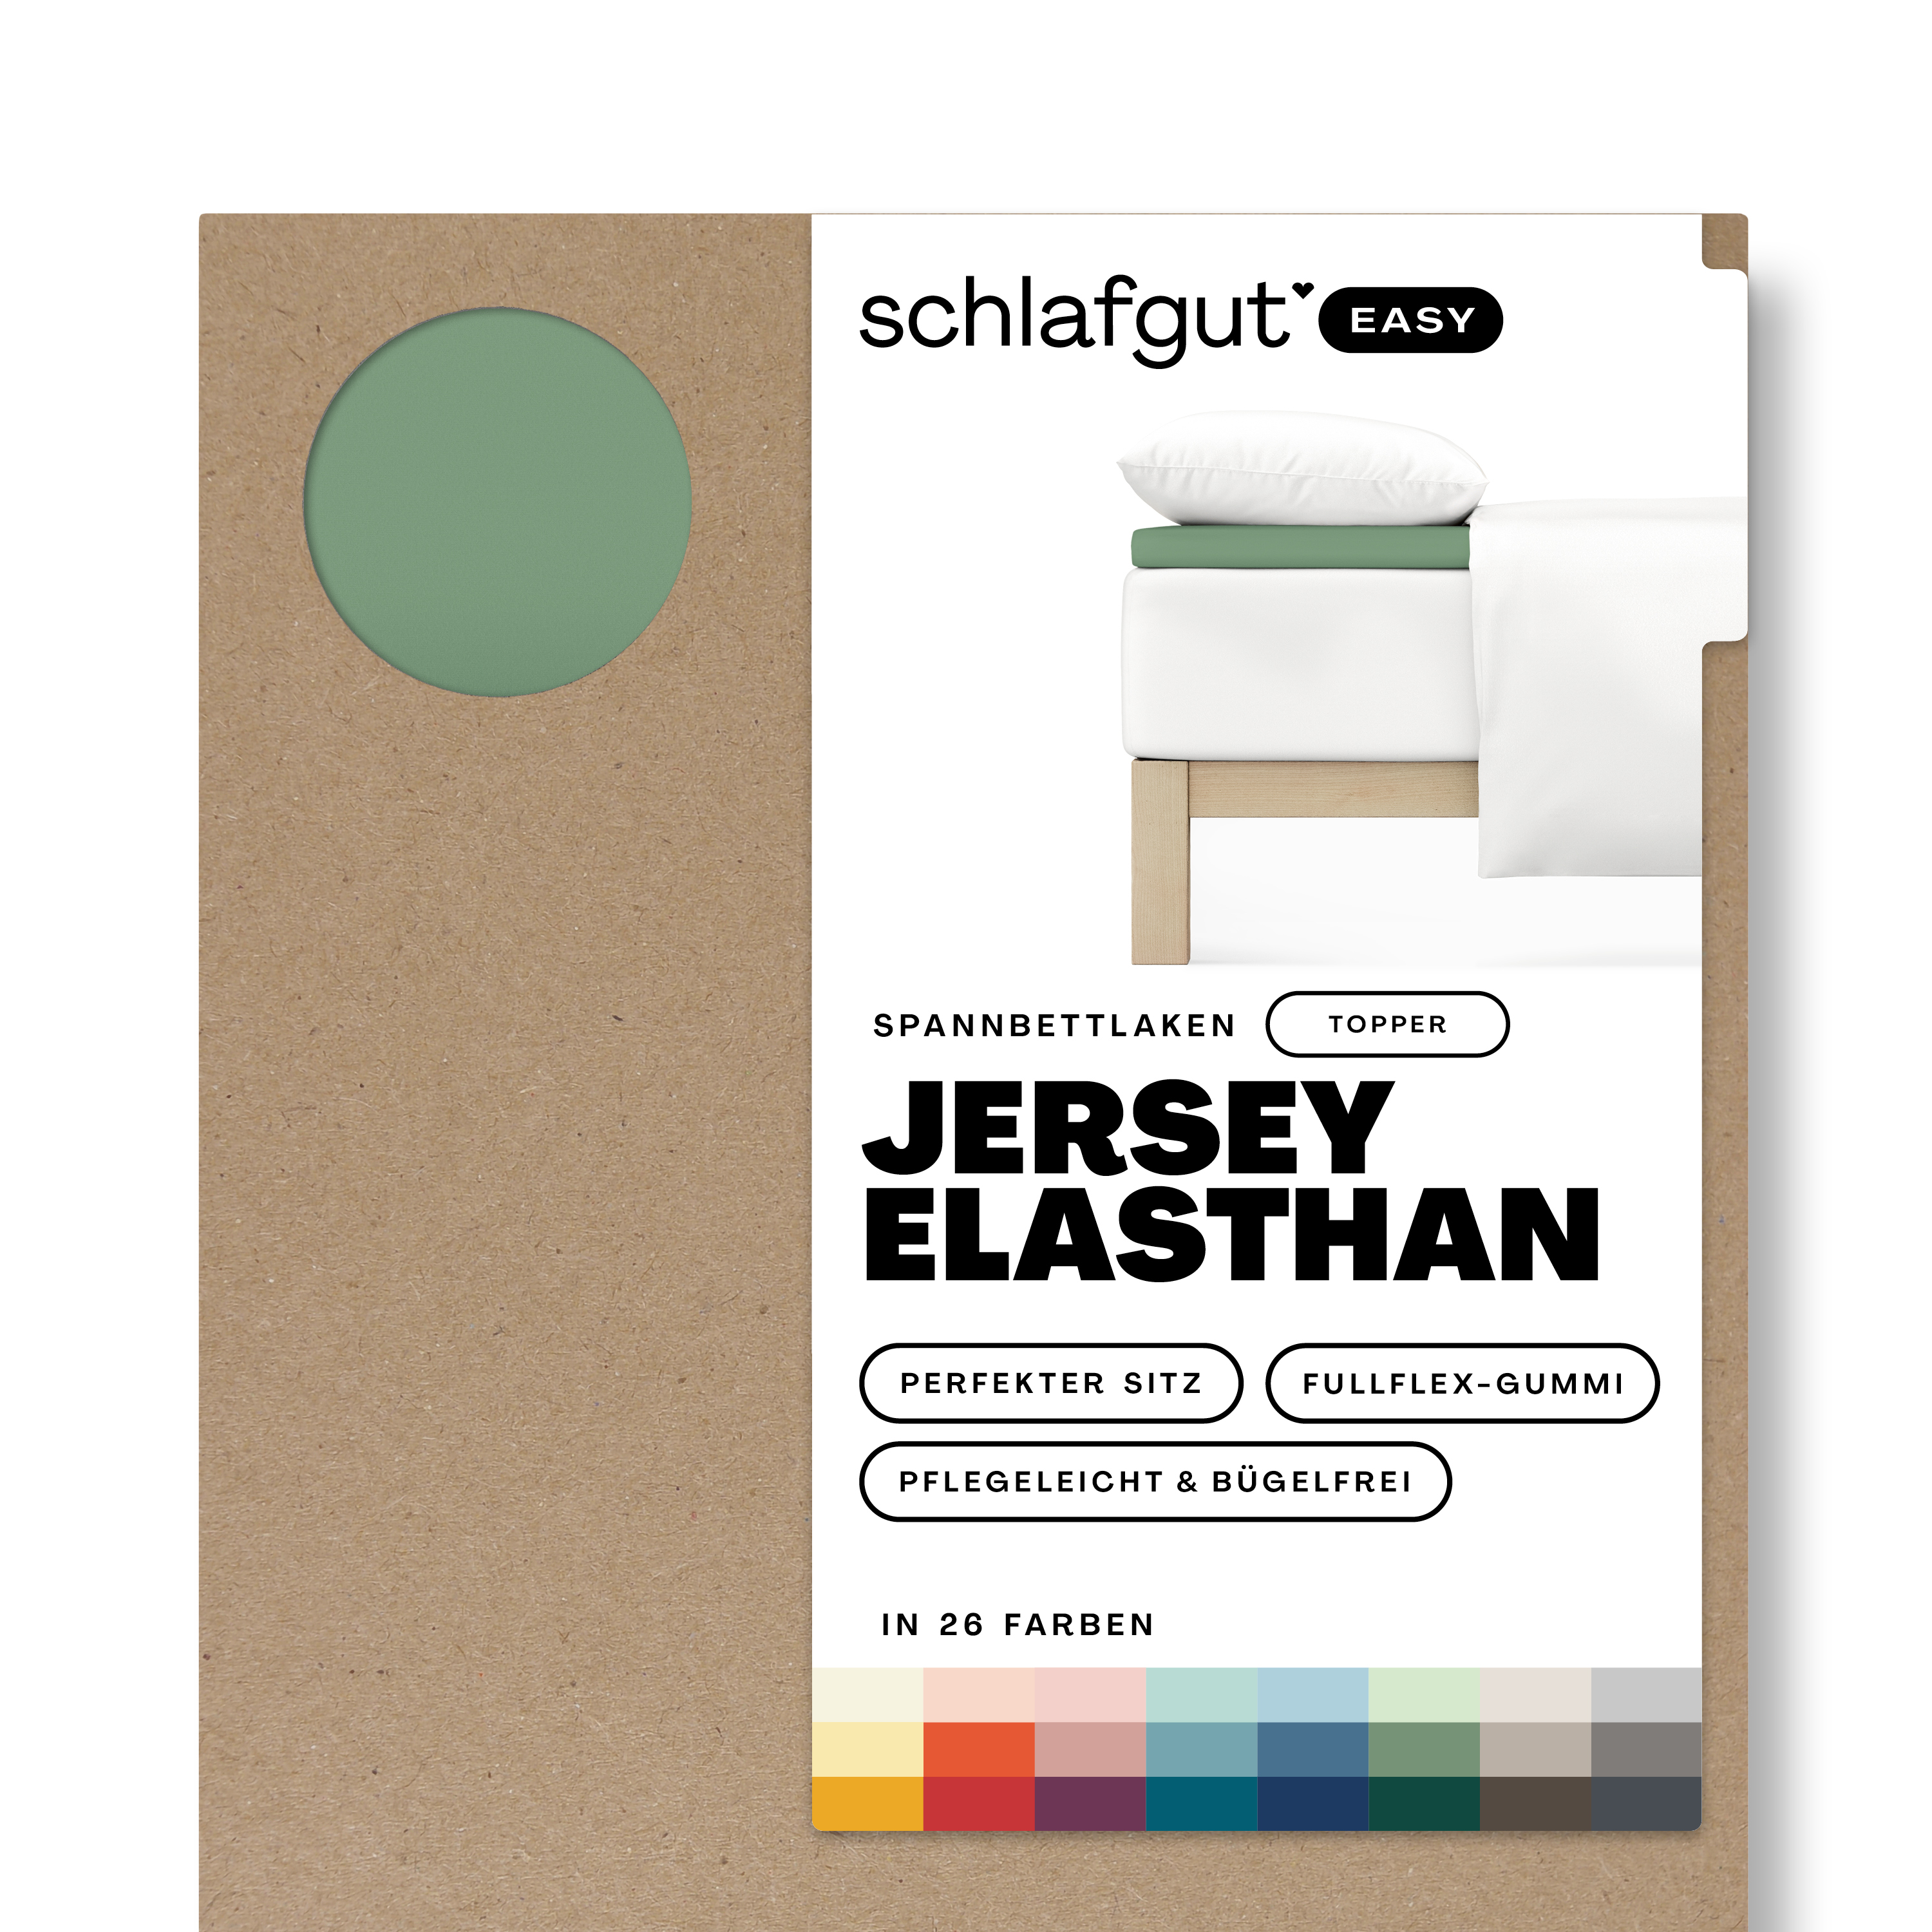 Das Produktbild vom Spannbettlaken der Reihe Easy Elasthan Topper in Farbe green mid von Schlafgut